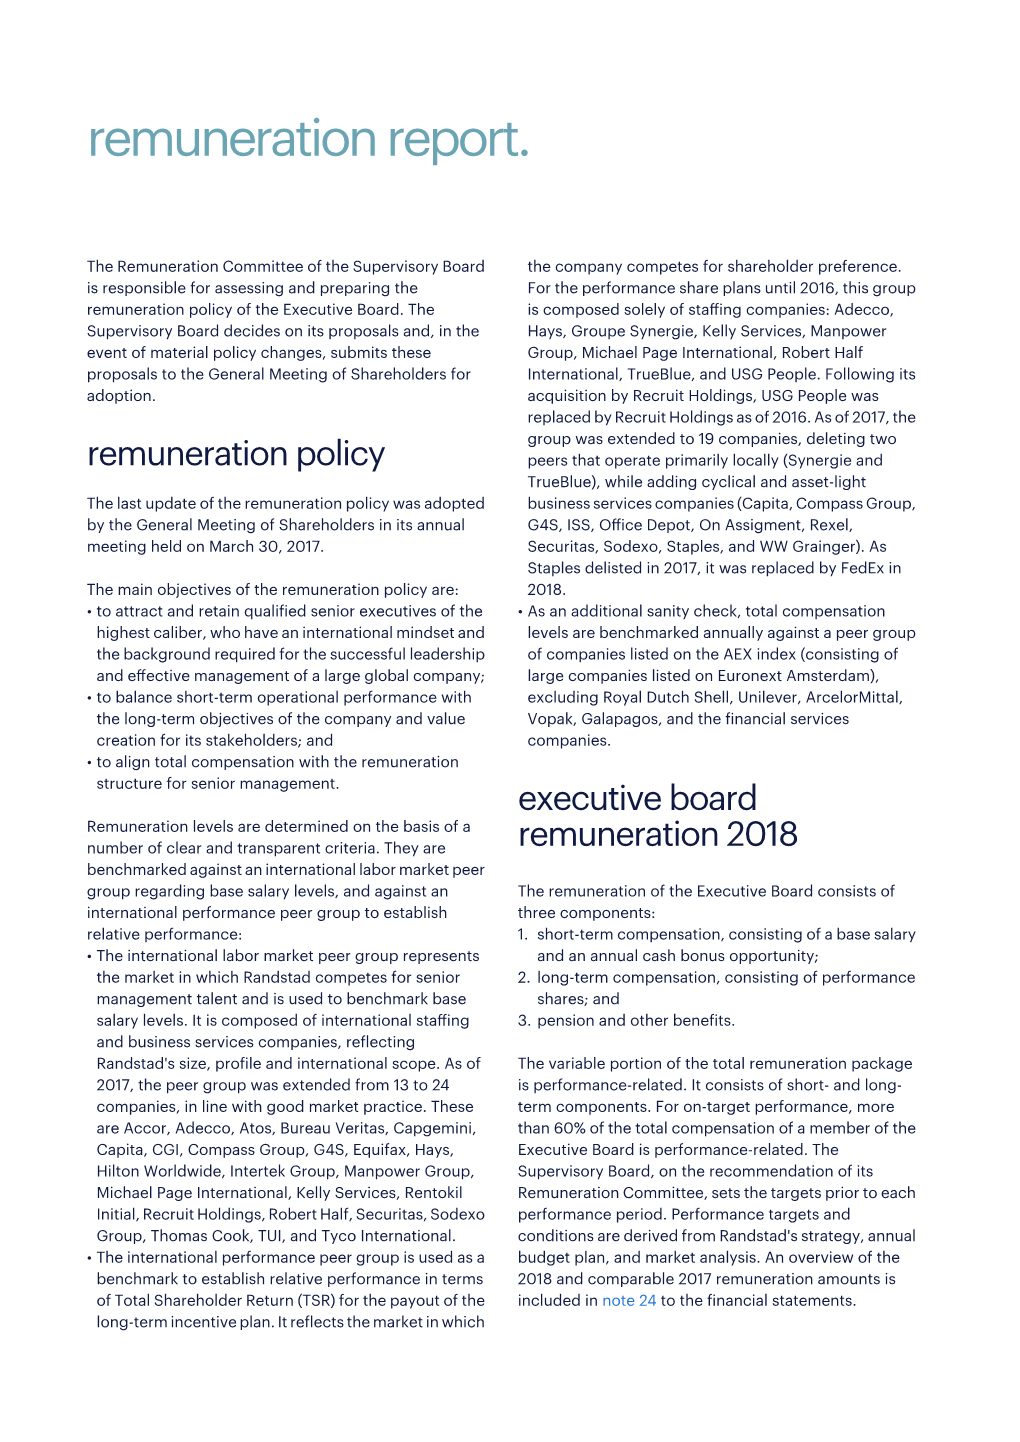 Remuneration Report 2018